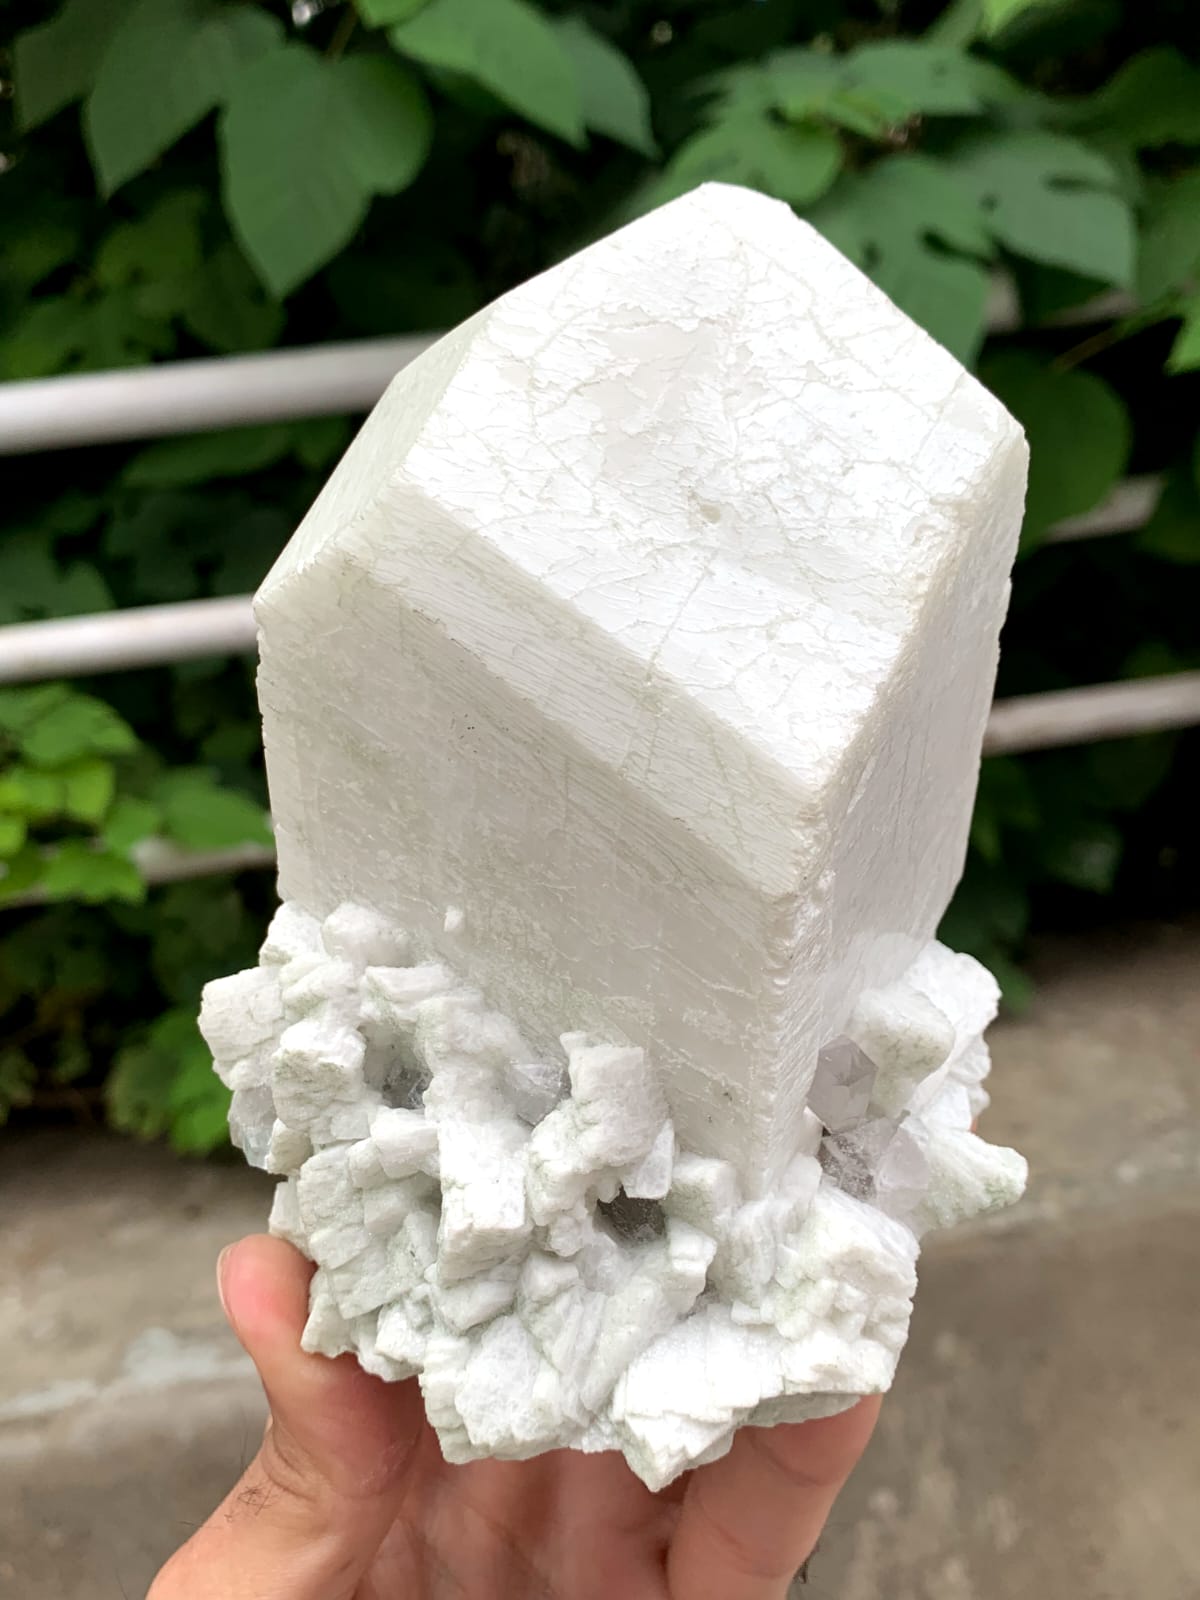 Lovely Milky White Microcline Feldspar On Cleavelandite With Quartz